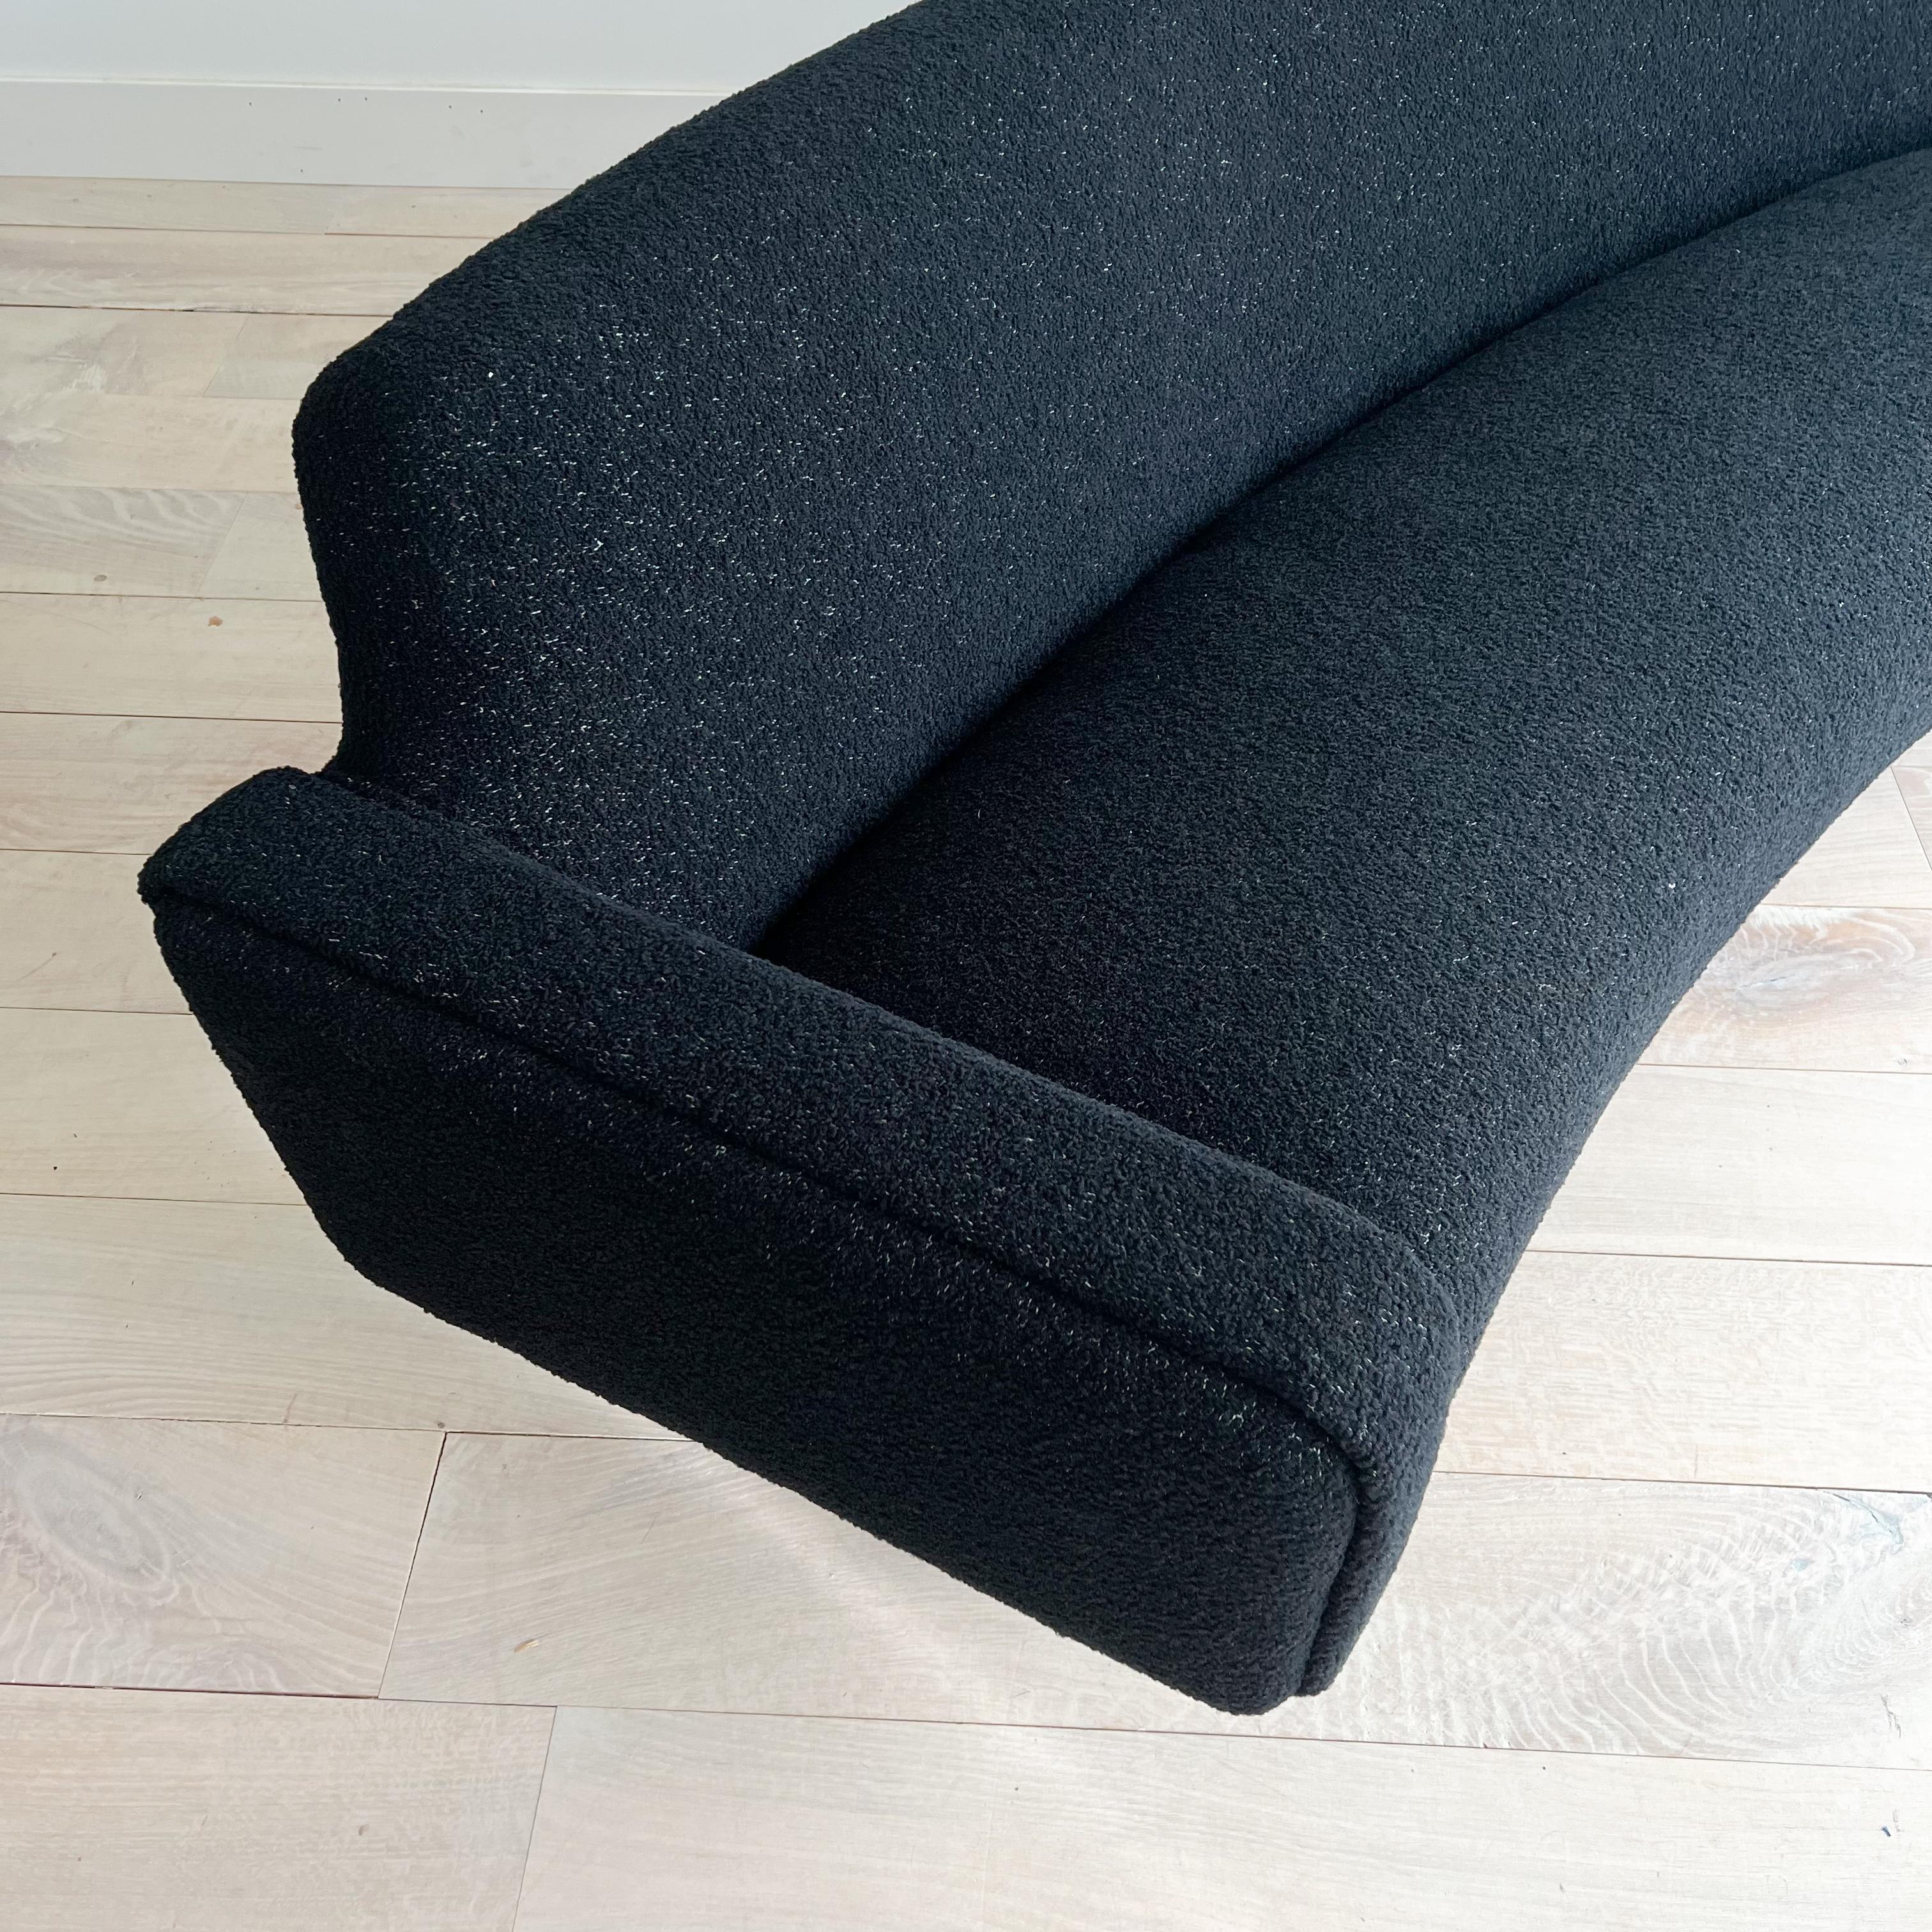 Illum Wikkelso's Rare Banana Curved Sofa - Model 450 - New Upholstery 6